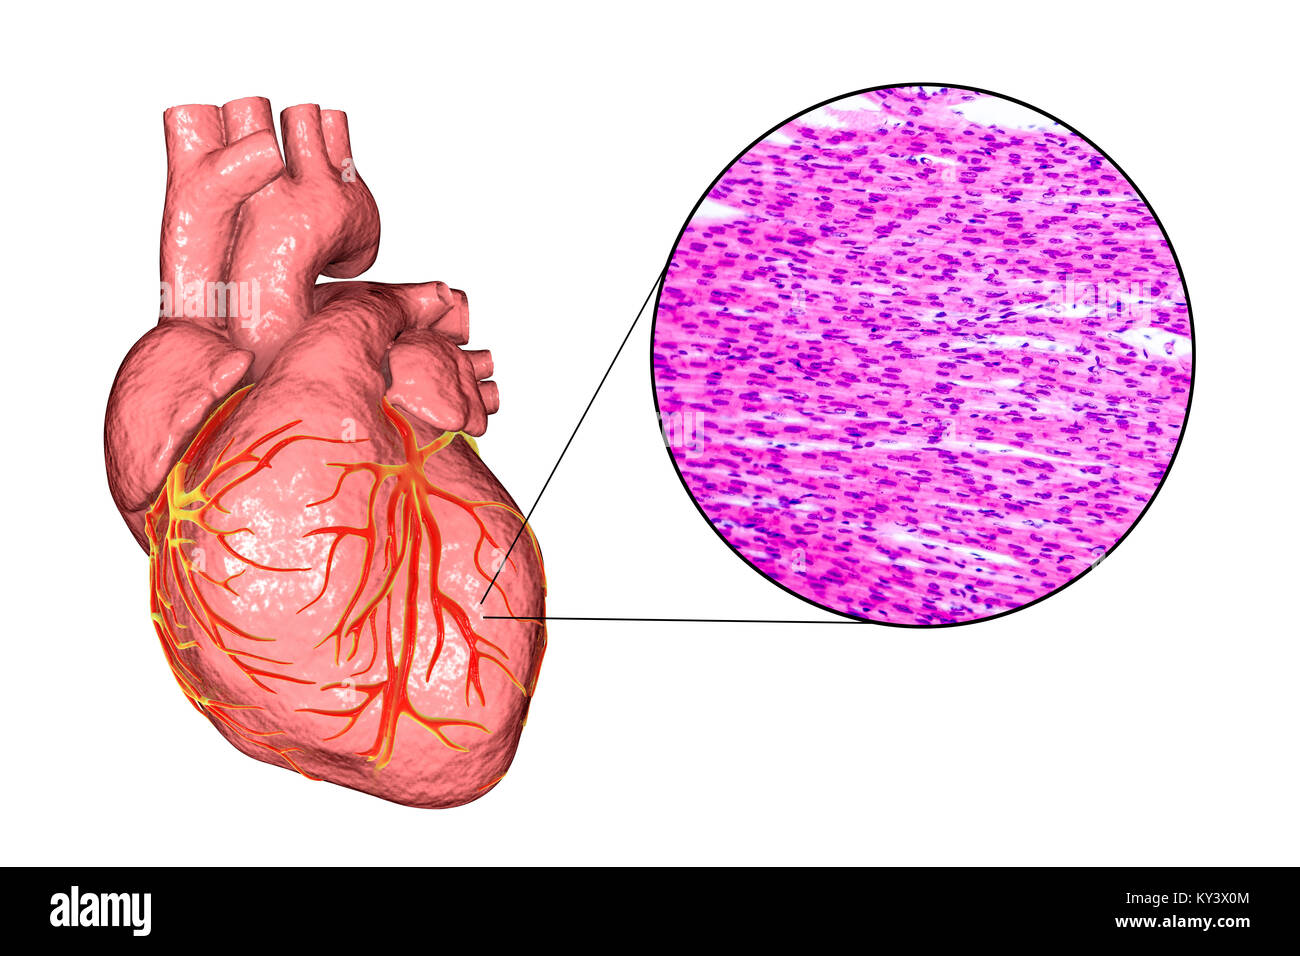 Equipo ilustración de un corazón humano y Micrografía de luz del músculo del corazón. El músculo cardíaco está formado por células fusiformes agrupadas en paquetes irregulares. Los límites entre las células individuales son débilmente visible aquí. Cada celda contiene un núcleo, visibles como manchas de color oscuro. El músculo cardíaco es un tejido muscular especializado que pueden contraerse de forma regular y continua, sin cansancio. Foto de stock